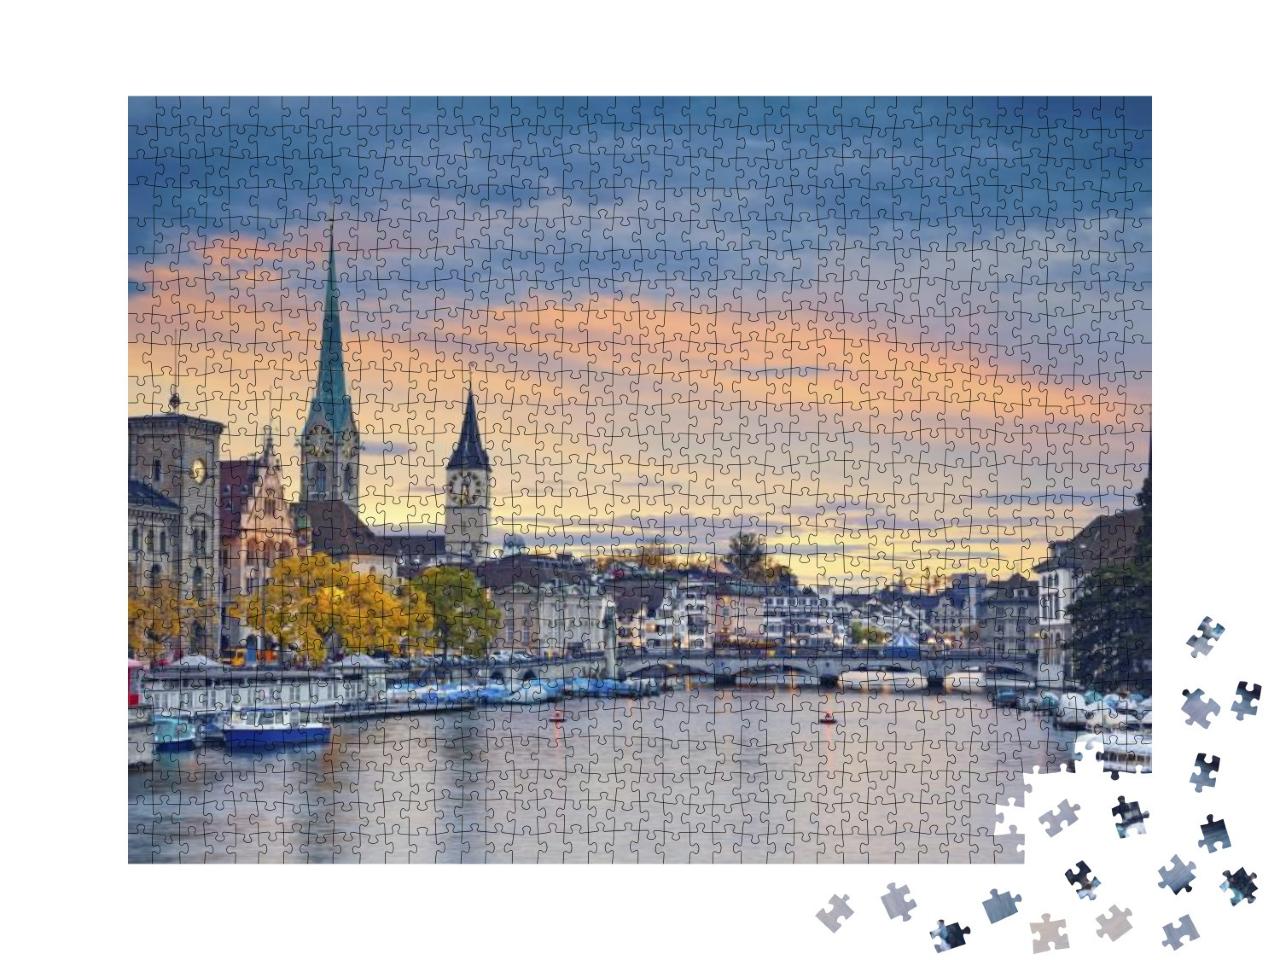 Zurich. Image of Zurich, Switzerland During Autumn Sunset... Jigsaw Puzzle with 1000 pieces